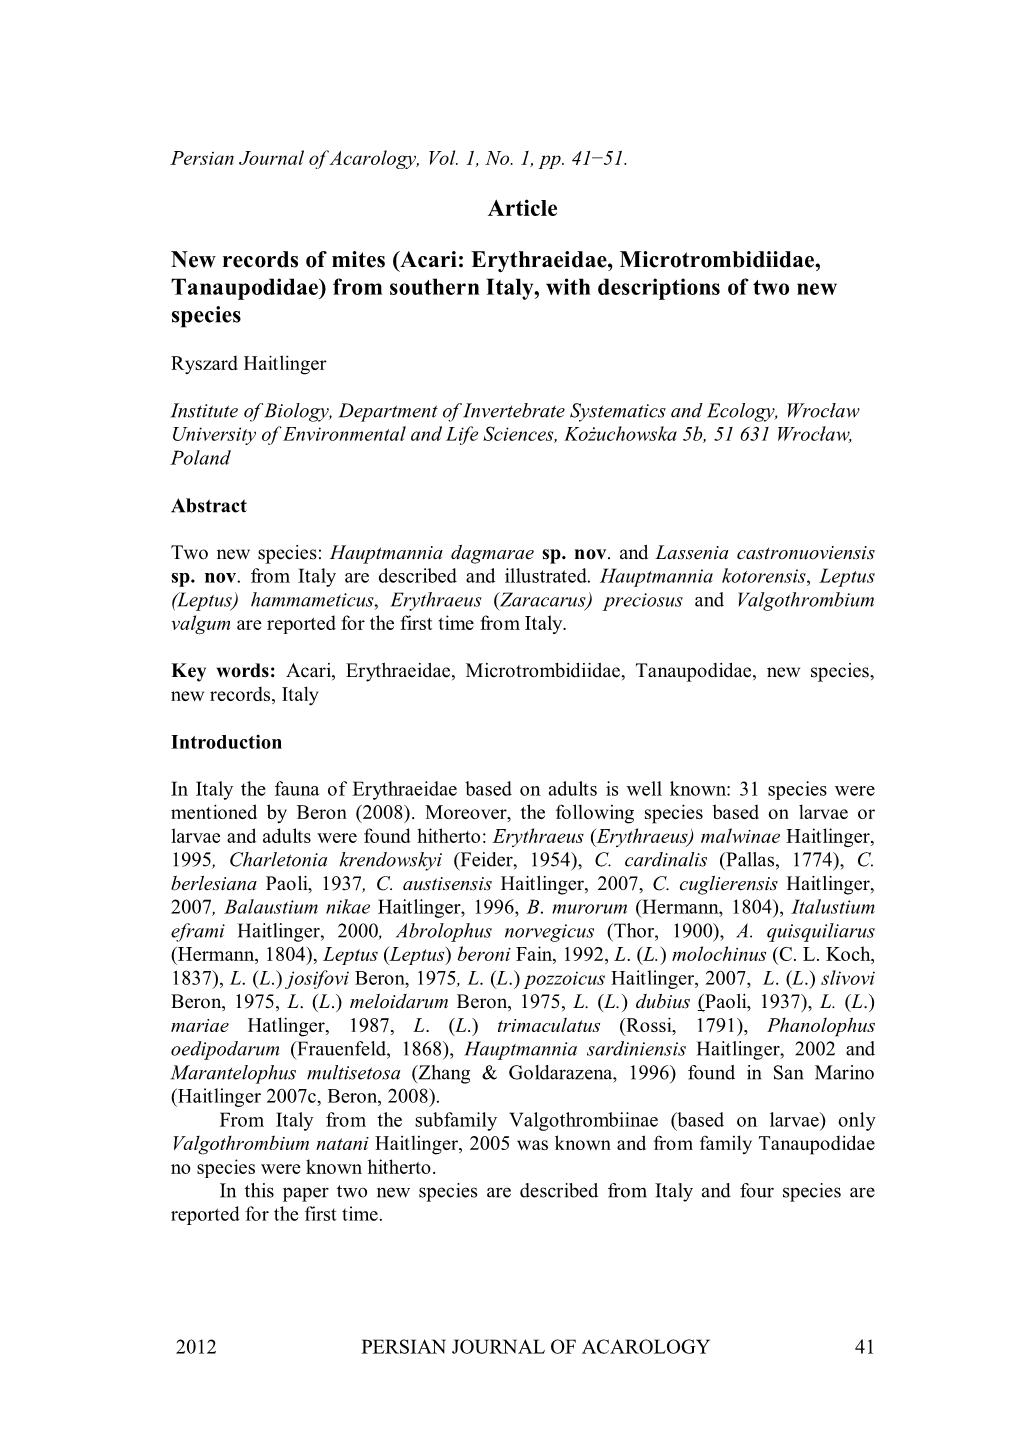 Article New Records of Mites (Acari: Erythraeidae